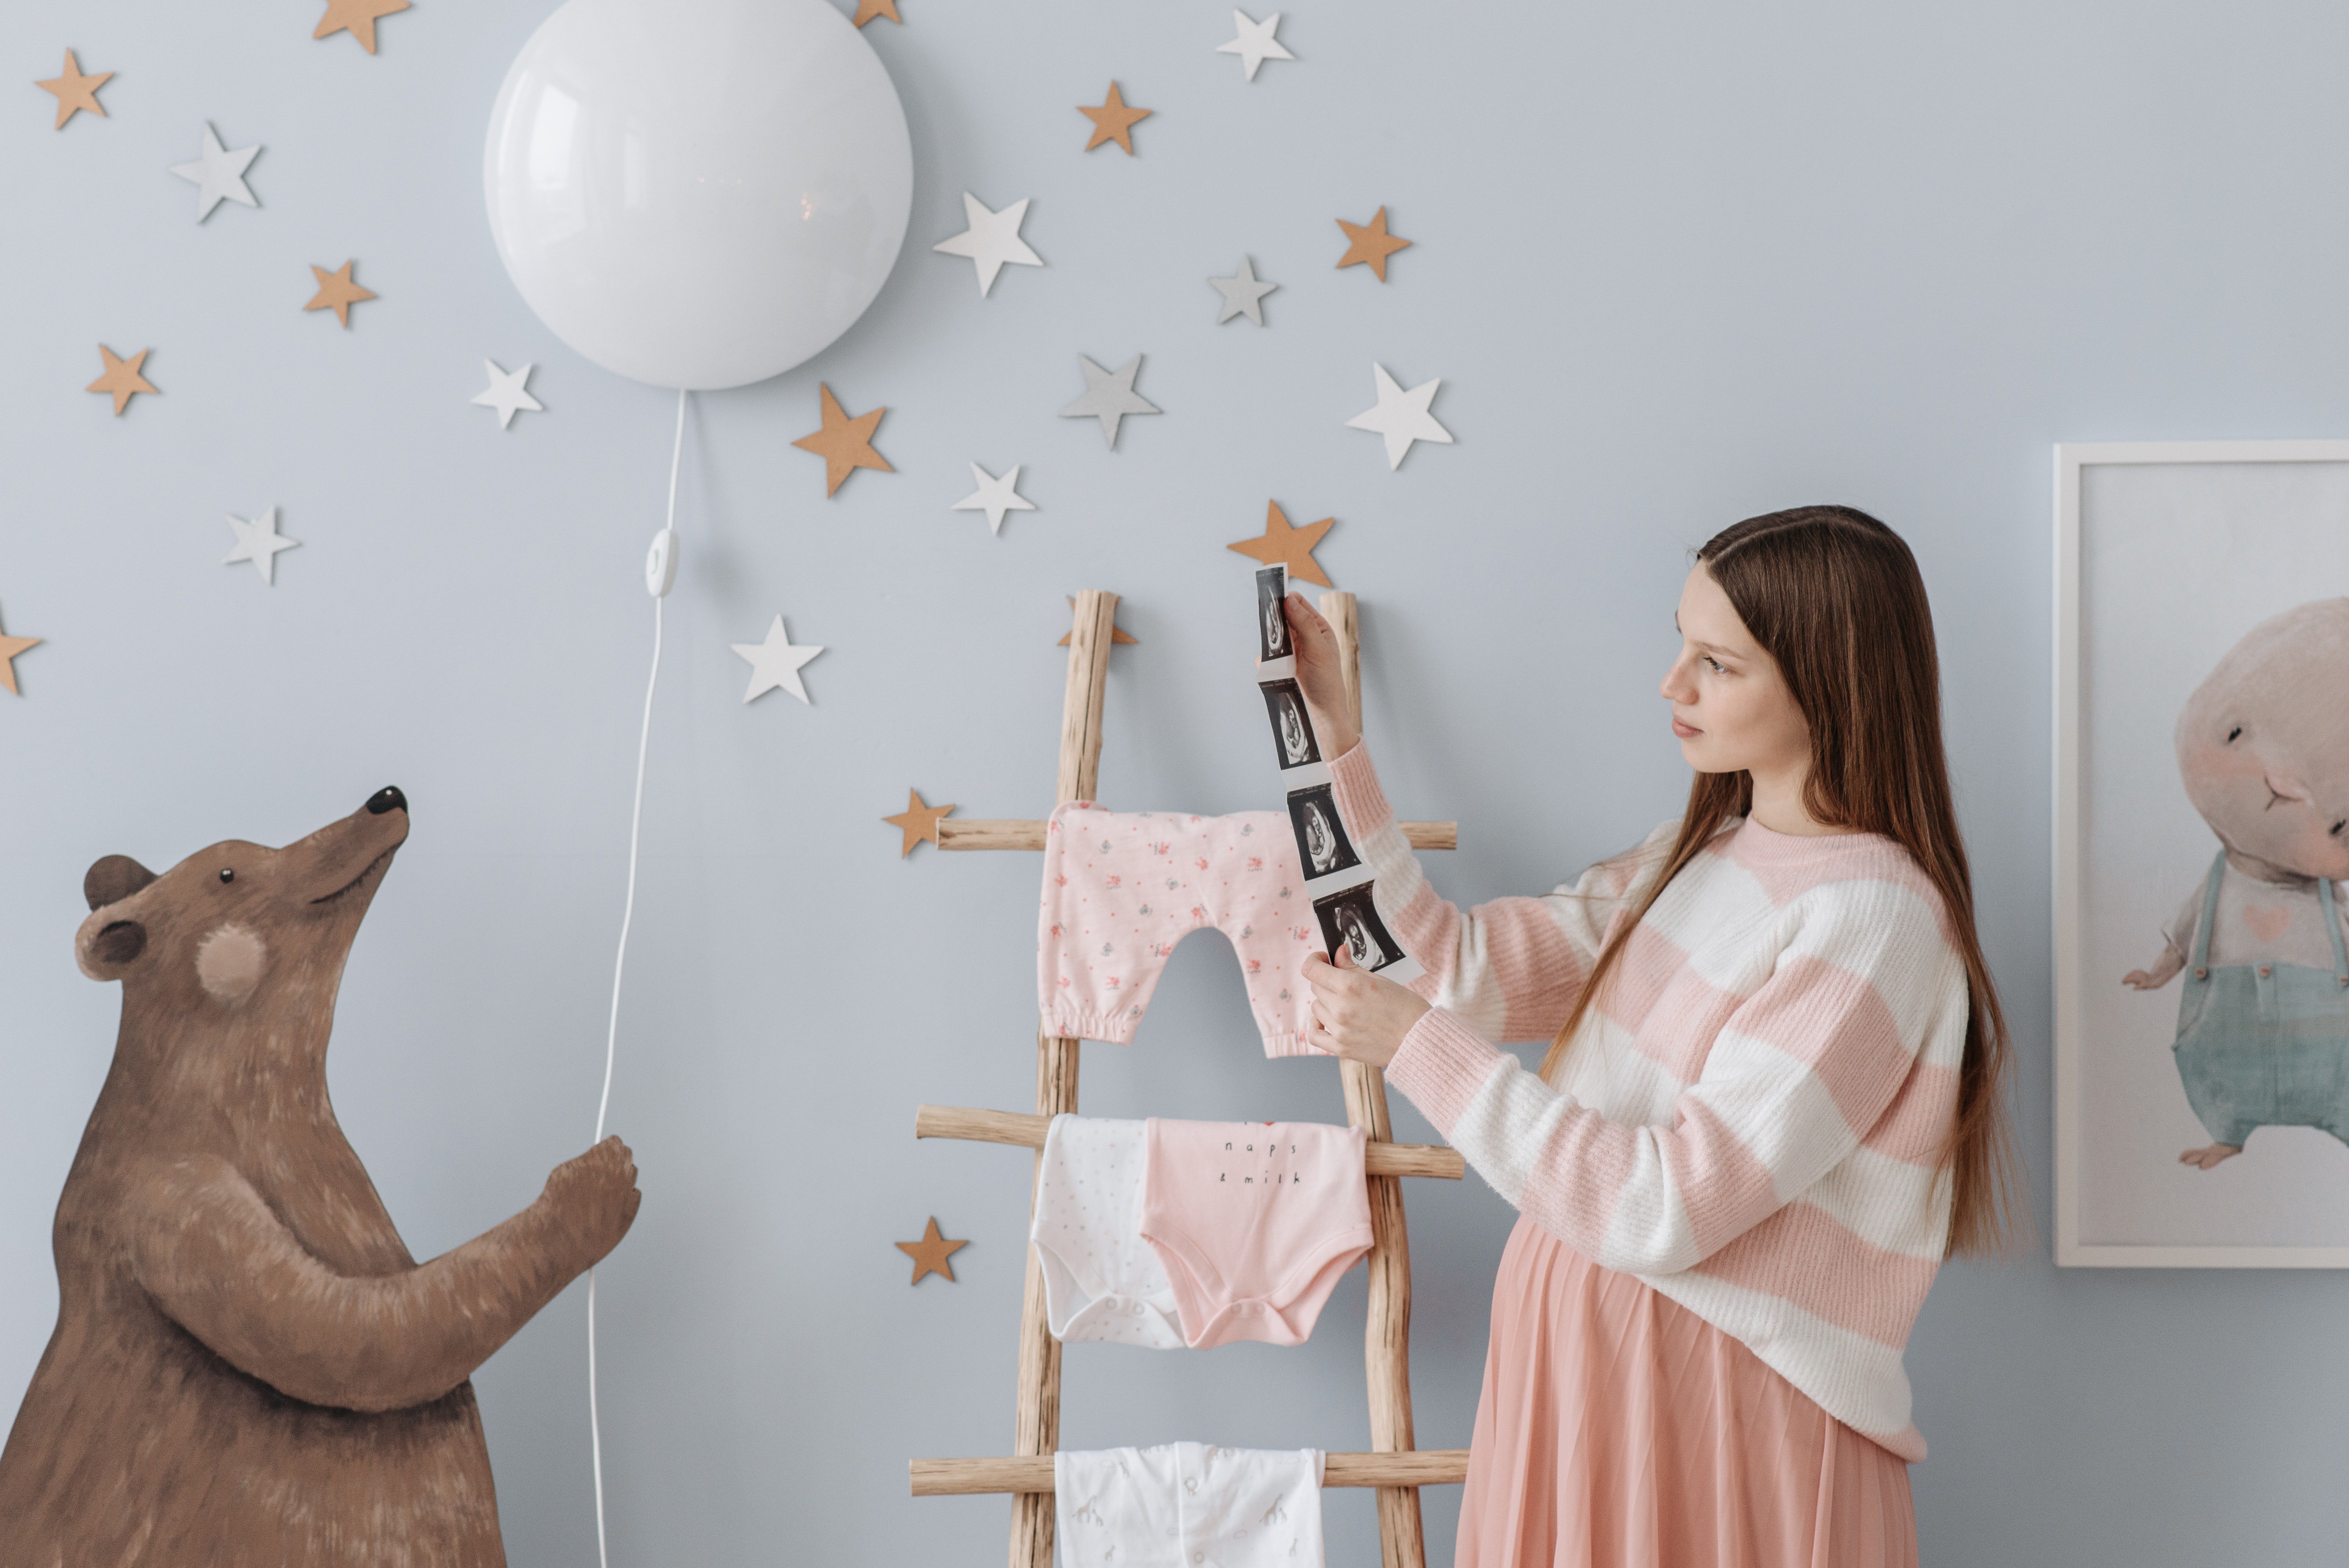 Melanie hat das Zimmer ihres zukünftigen Babys mit besonderer Sorgfalt gestaltet. | Quelle: Pexels